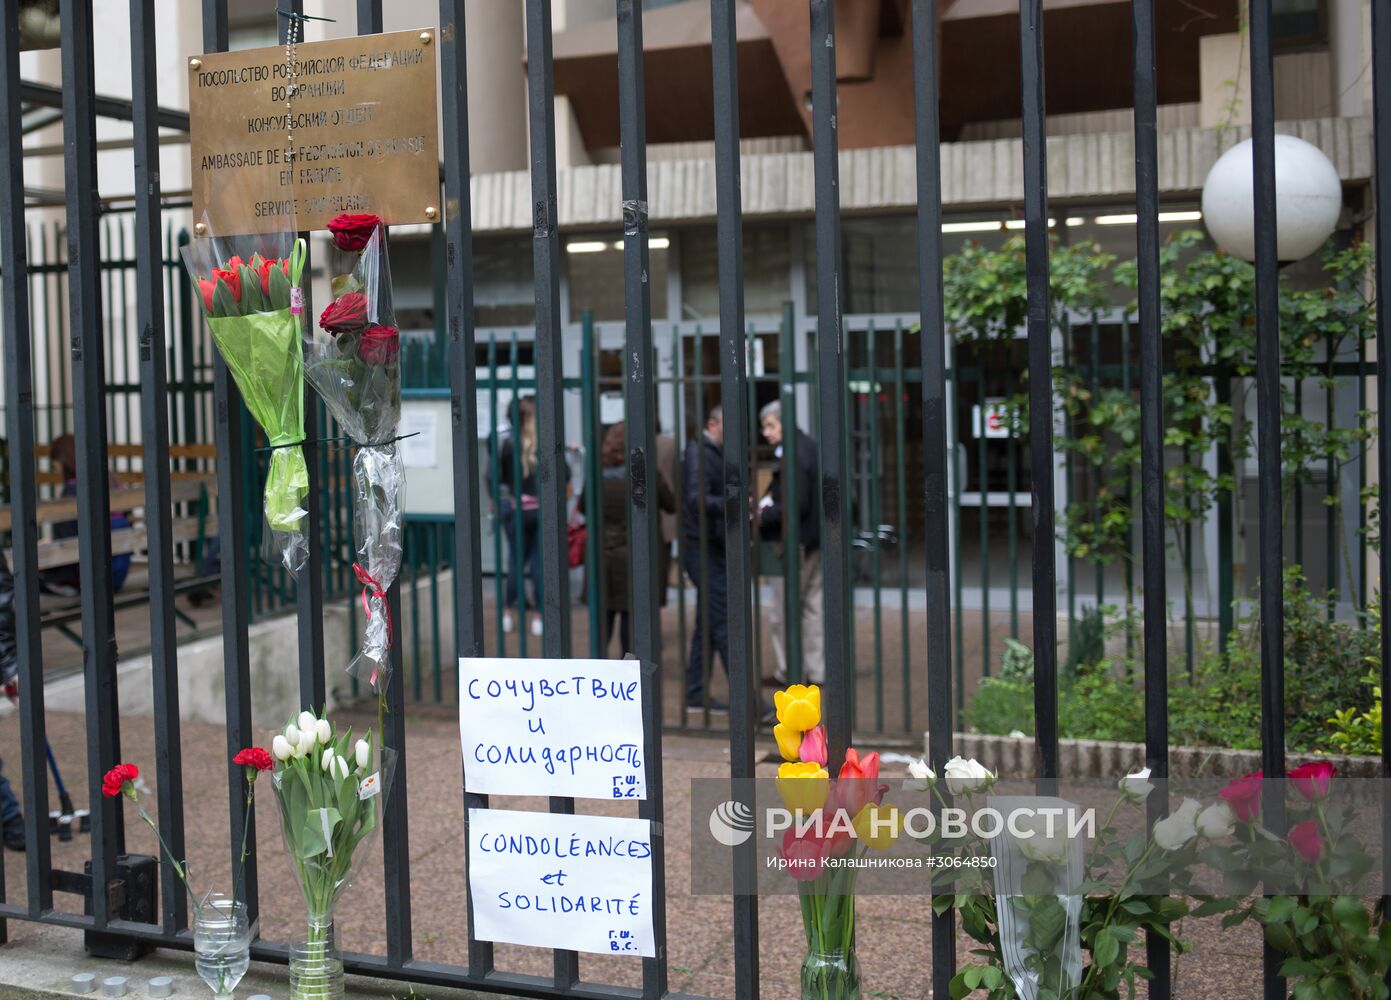 Траурные мероприятия за рубежом в память о погибших при взрыве в метро Санкт-Петербурга